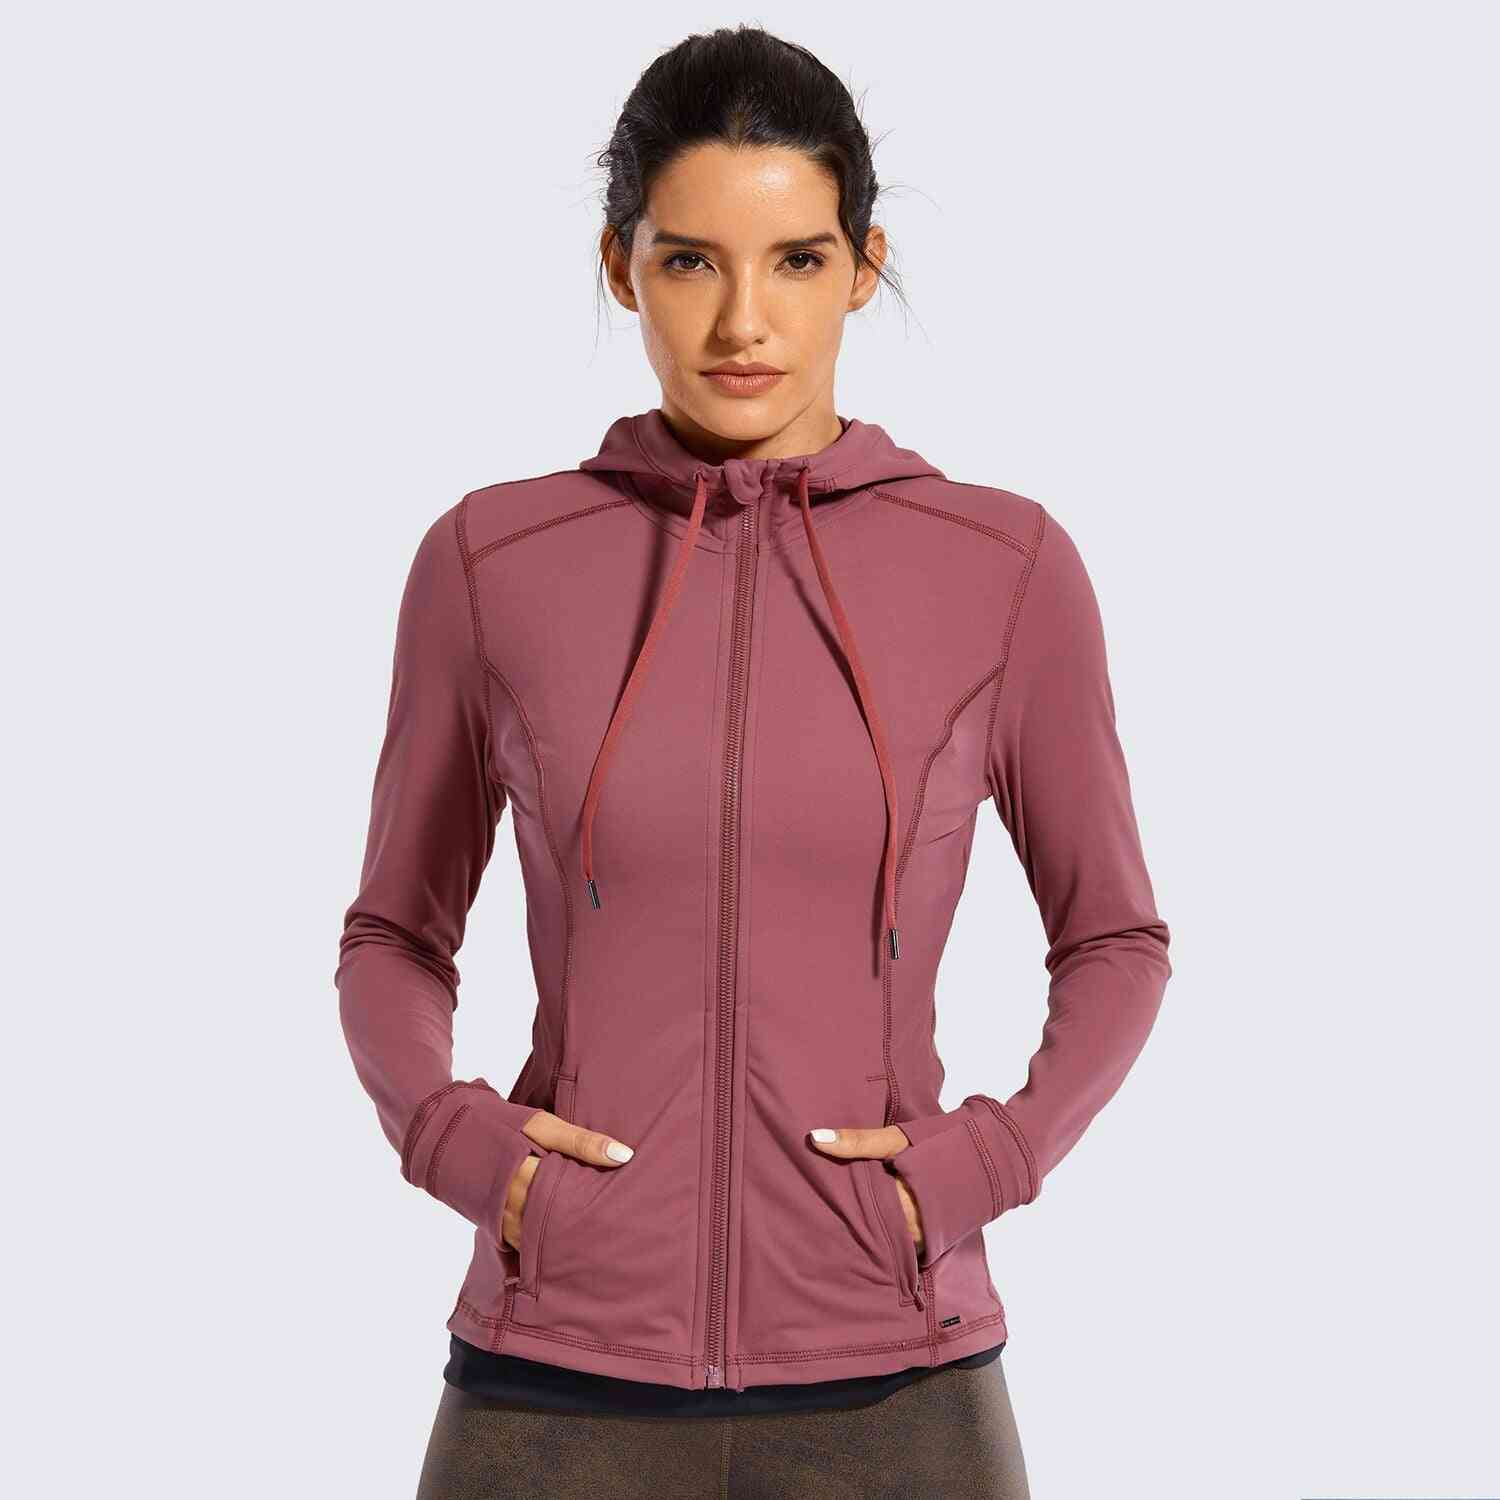 Women Sportswear Hooded Workout Jacket With Zip Pockets